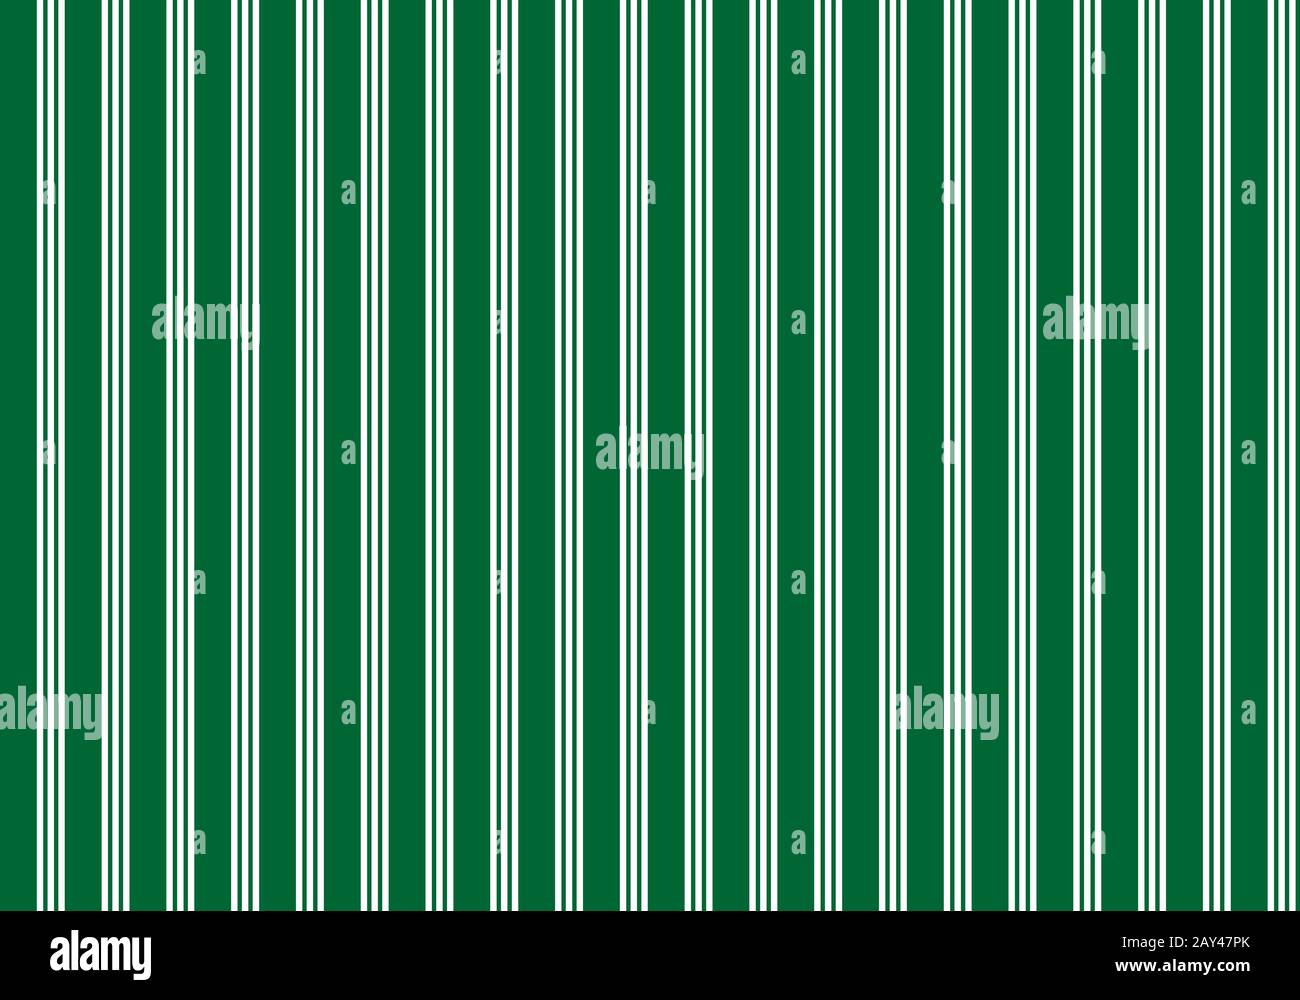 Vertikale parallele Linien Stockfoto